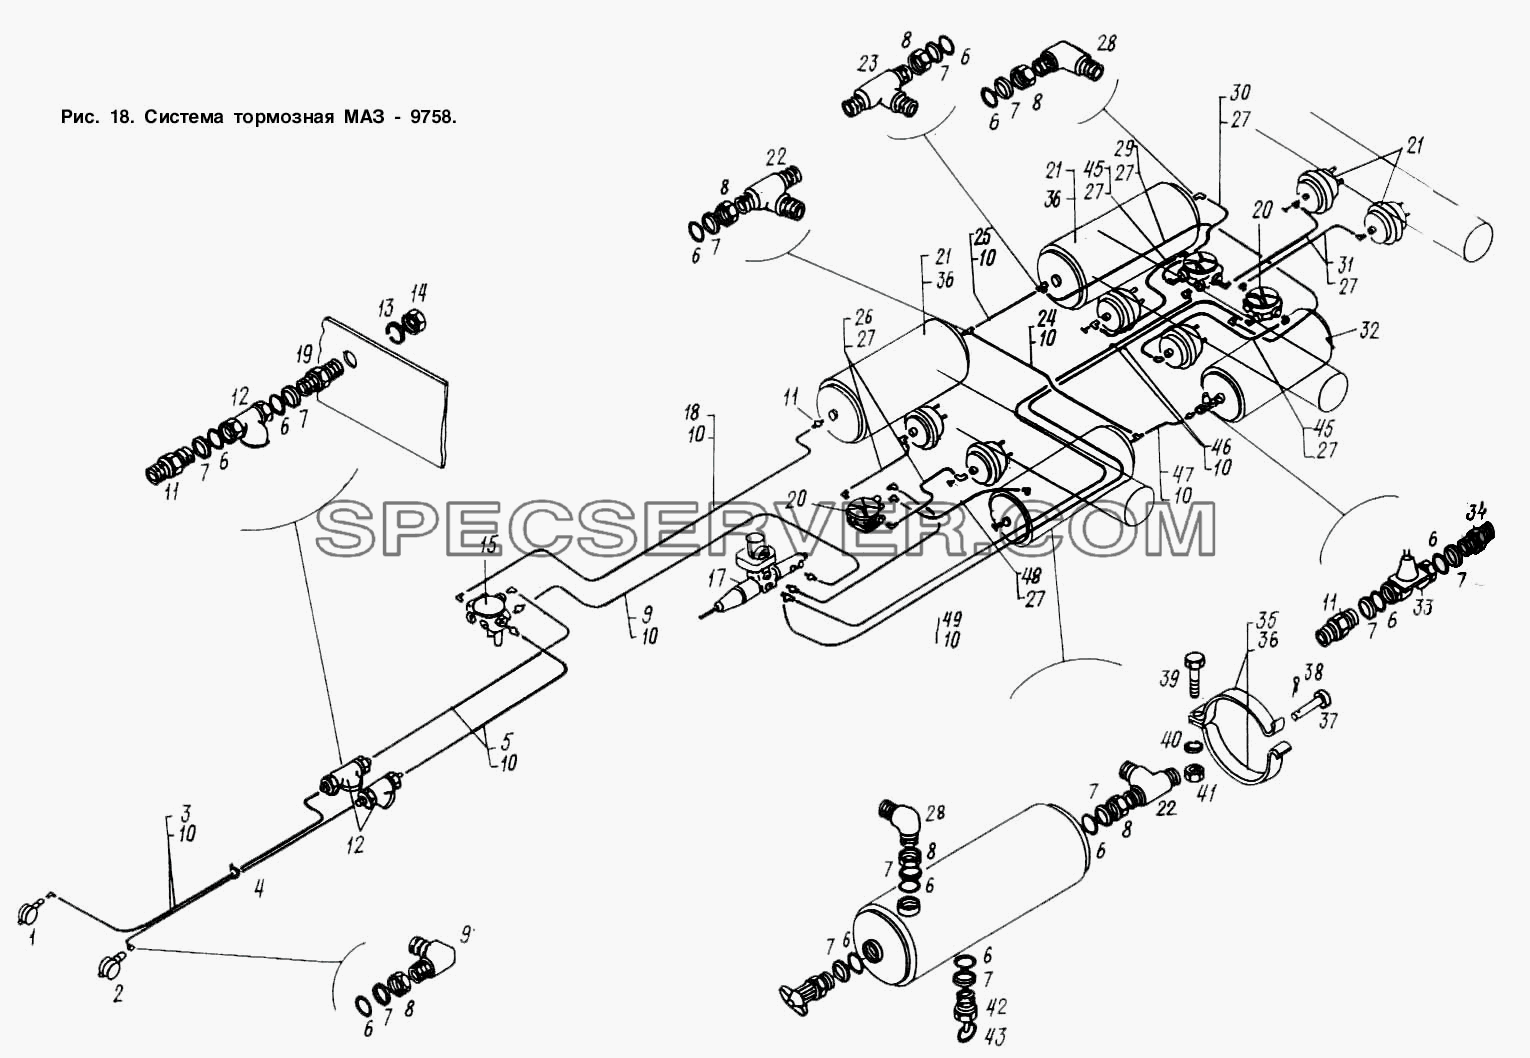 Система тормозная МАЗ 9758 для МАЗ-9758 (список запасных частей)